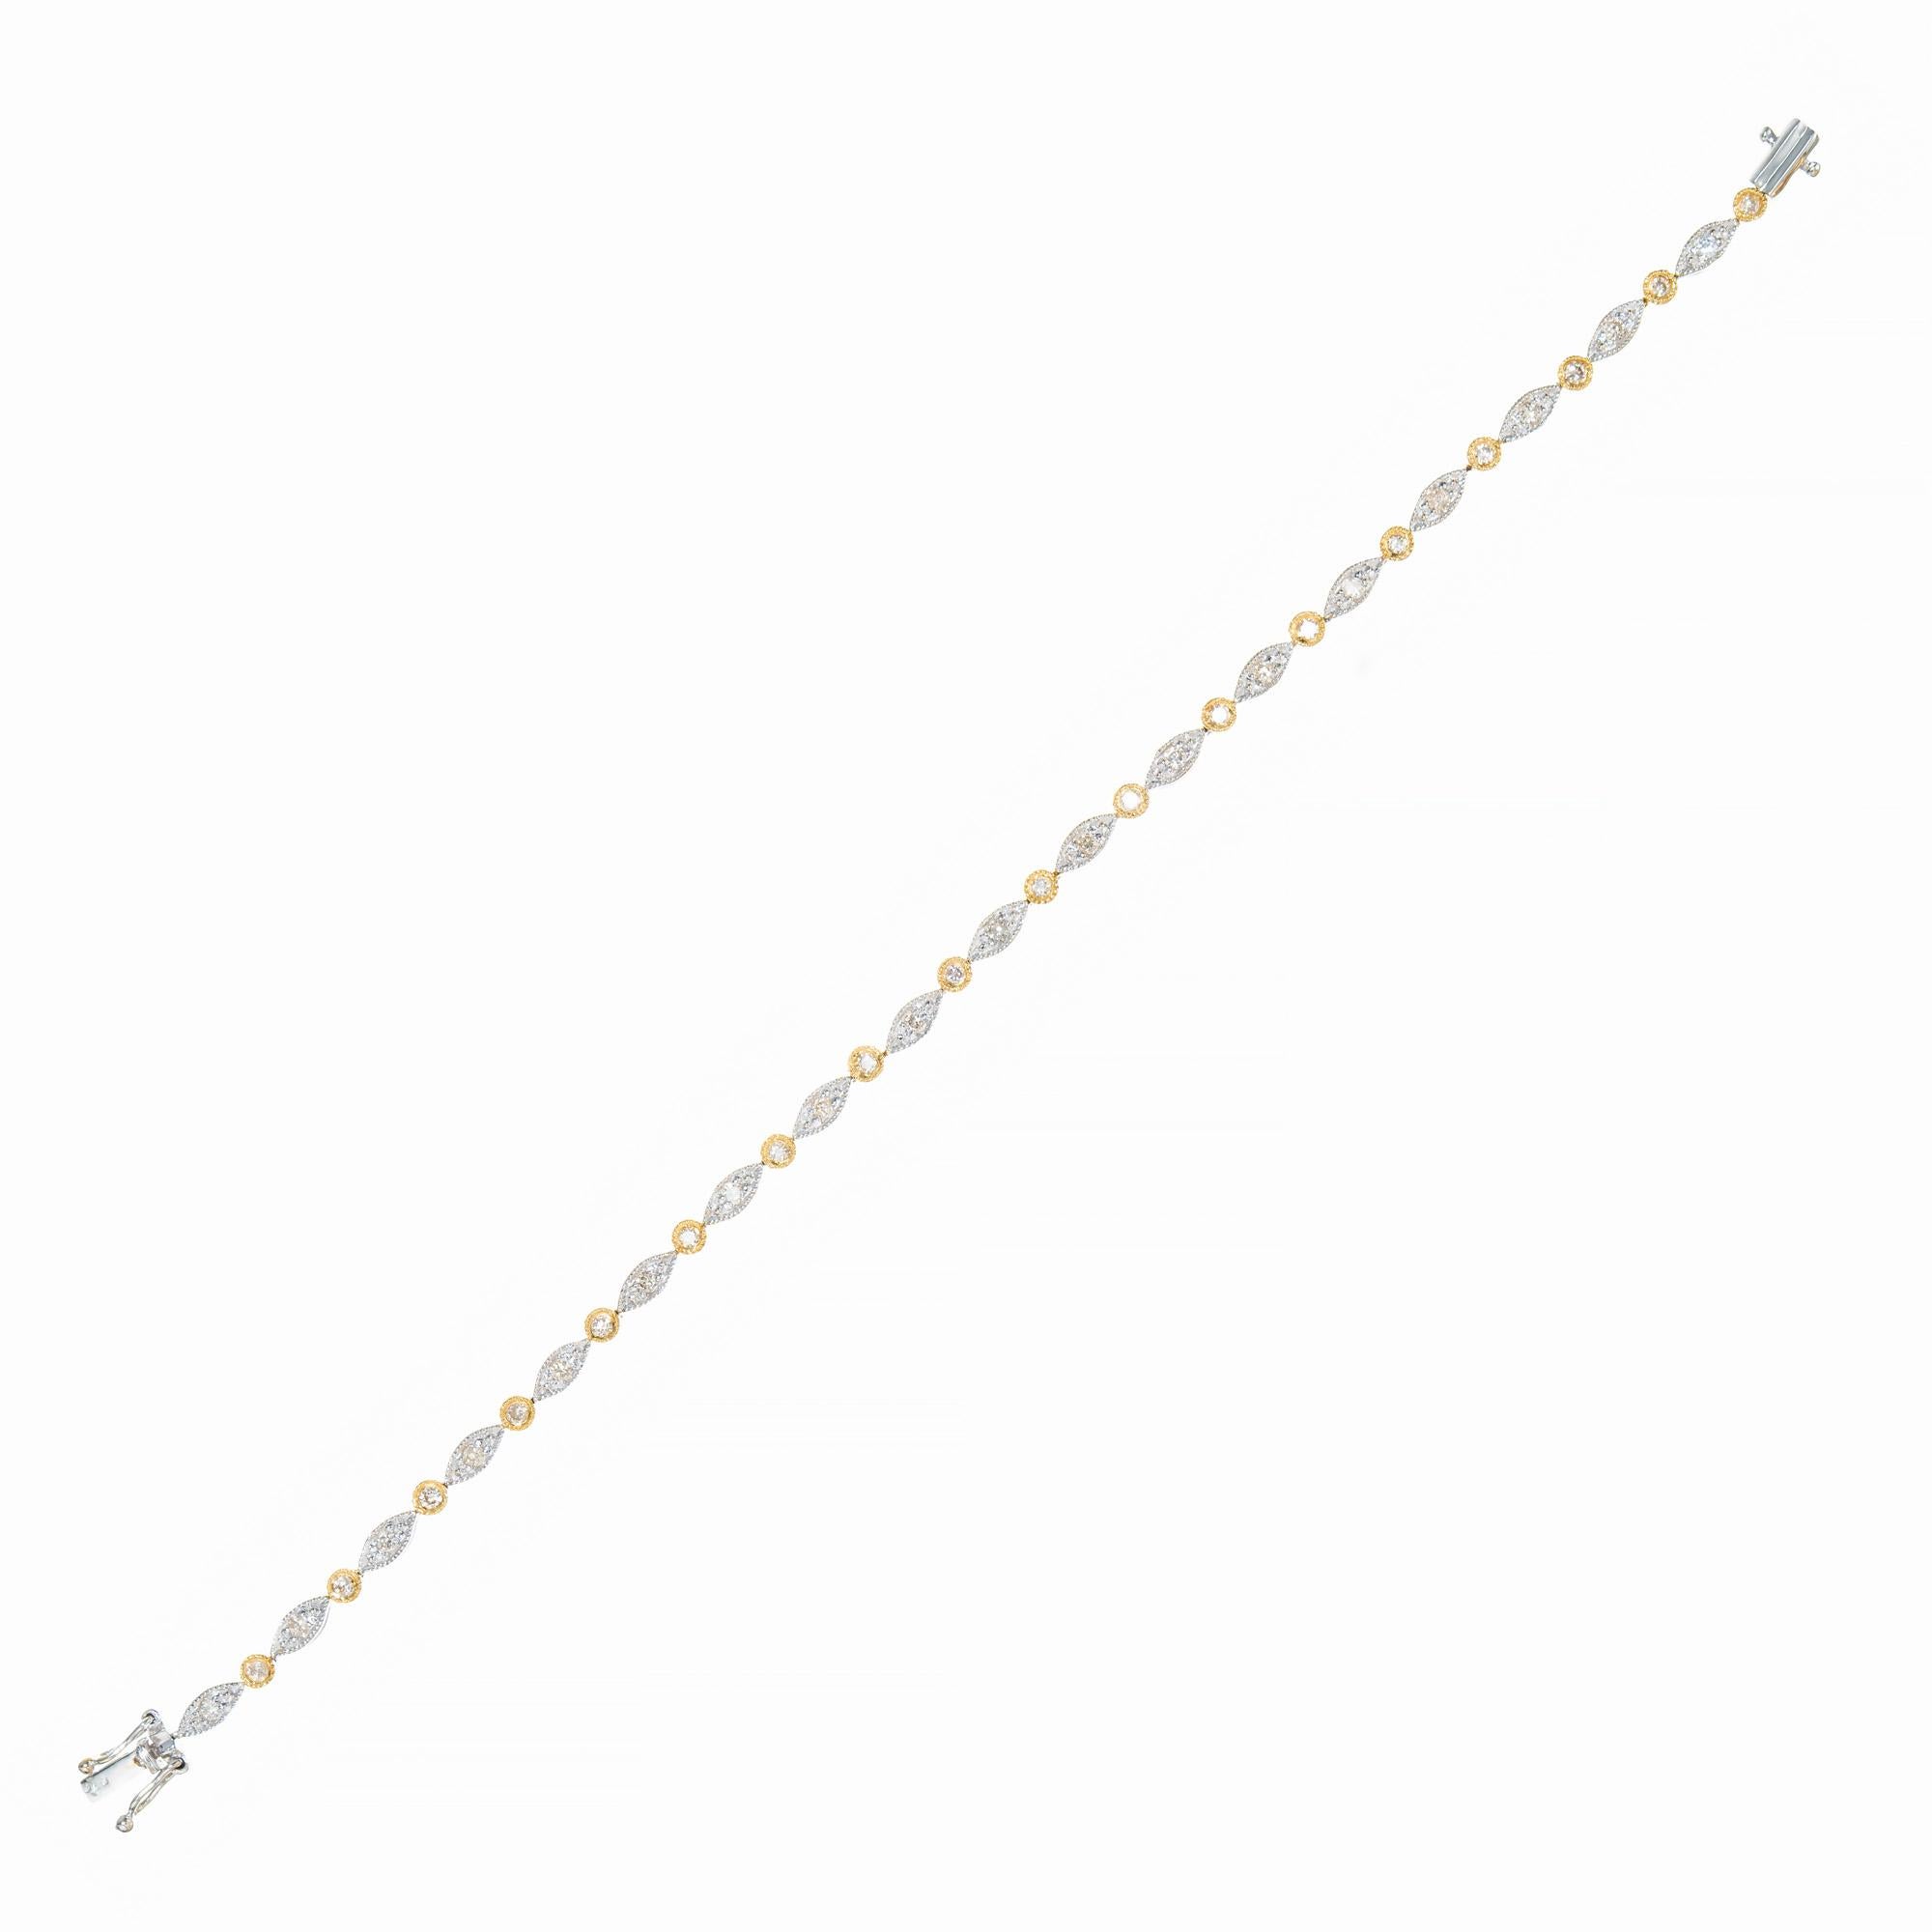 2.00 Carat Diamond Two Tone Gold Necklace Bracelet Set For Sale 1